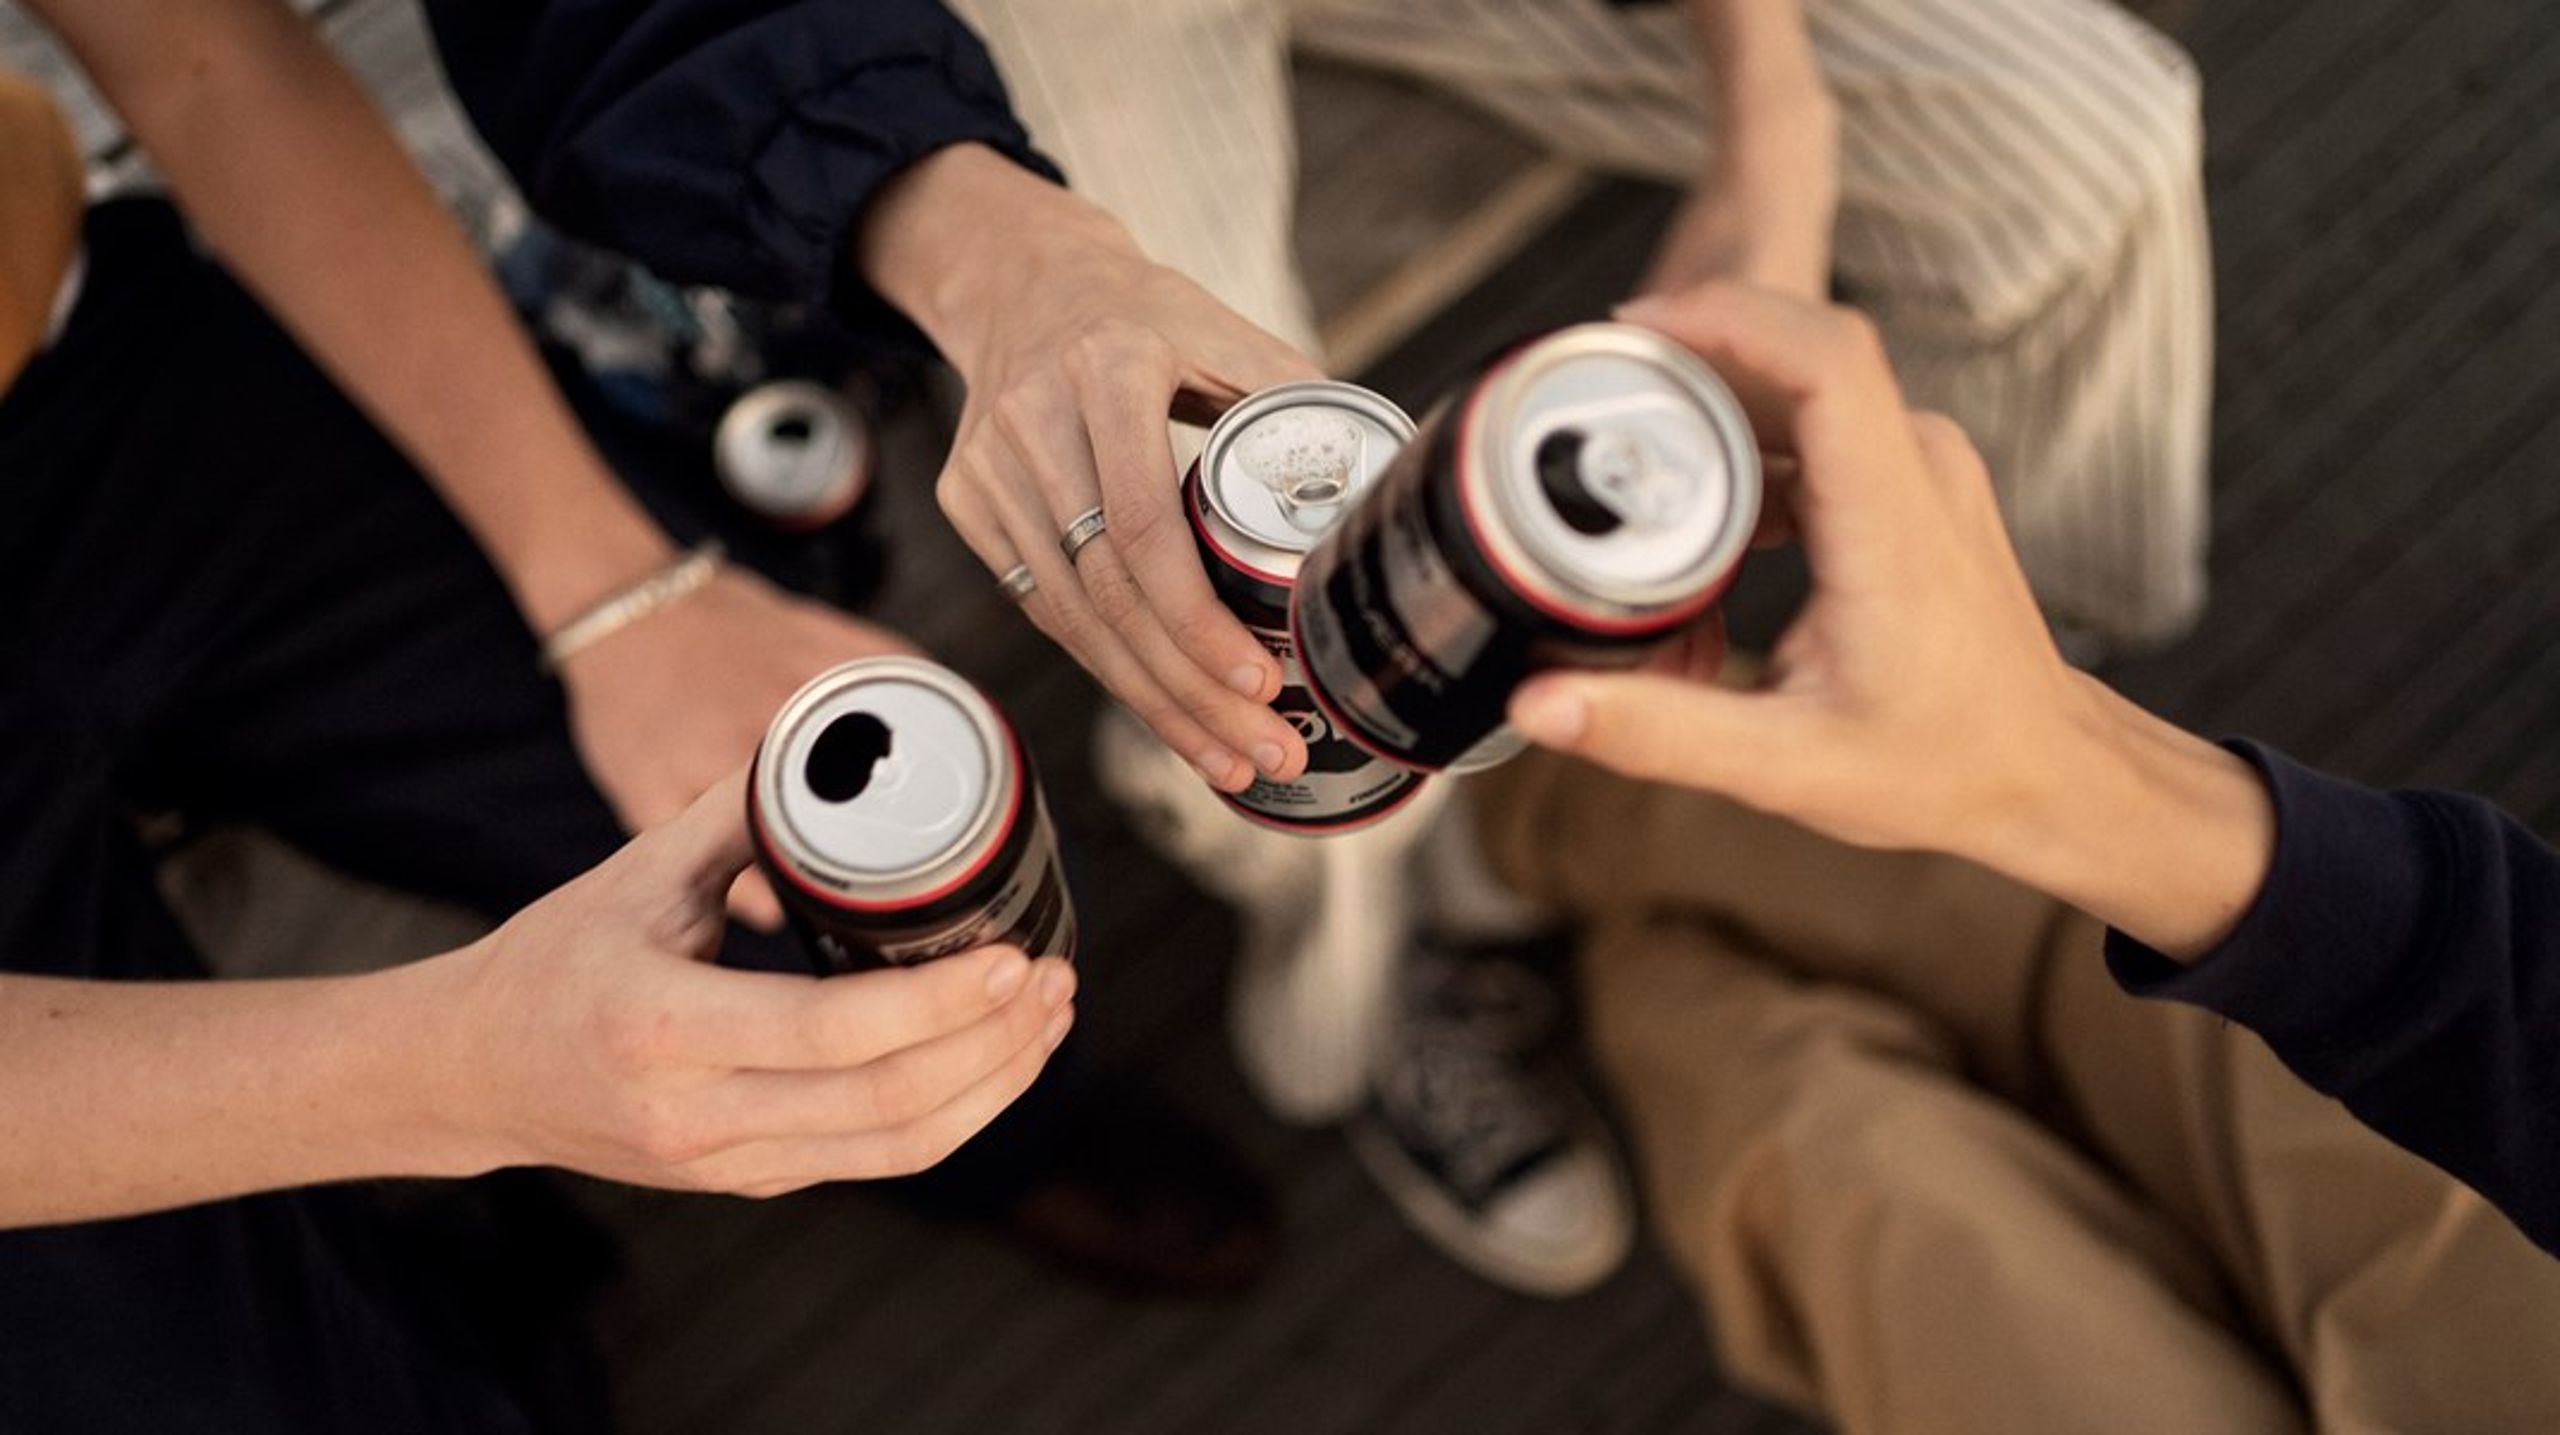 Adskillige undersøgelser&nbsp;konkluderer, at det lykkes for to ud af tre unge at købe alkohol med videre, som de ikke må købe, skriver indlæggets ti afsendere.